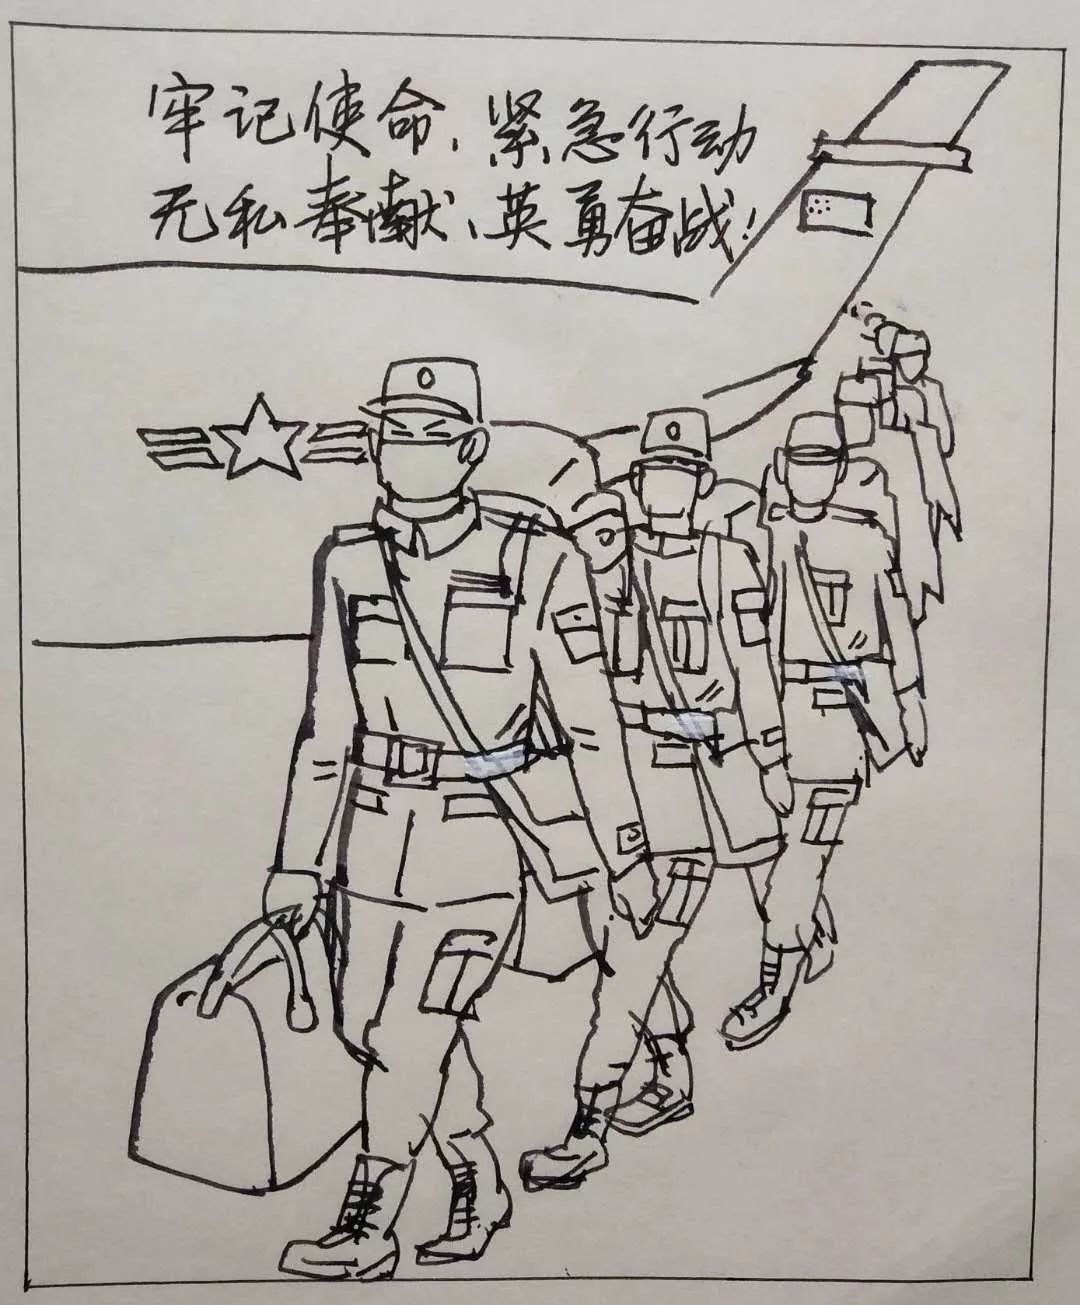 转载:永州日报 | 以笔为枪,江华退役老兵参战"抗疫",精彩"抗疫漫画